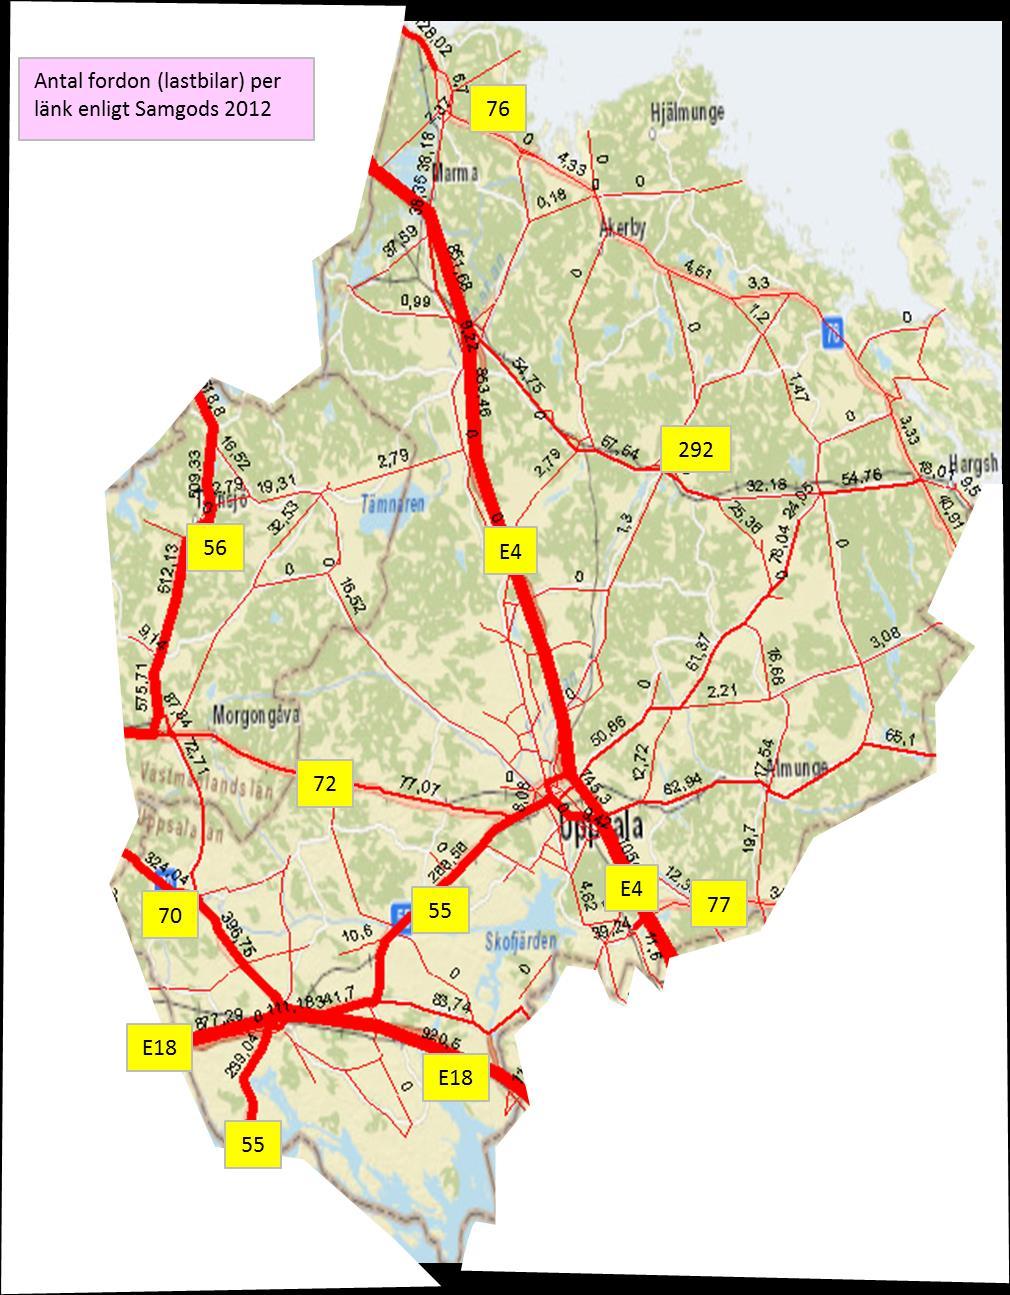 Figur 8: Samgods flödeskarta för Uppsala län, med avlästa vägnummer inlagda Västmanlands län En screenshot av Samgods resultat för Västmanlands län visas i Figur 9.